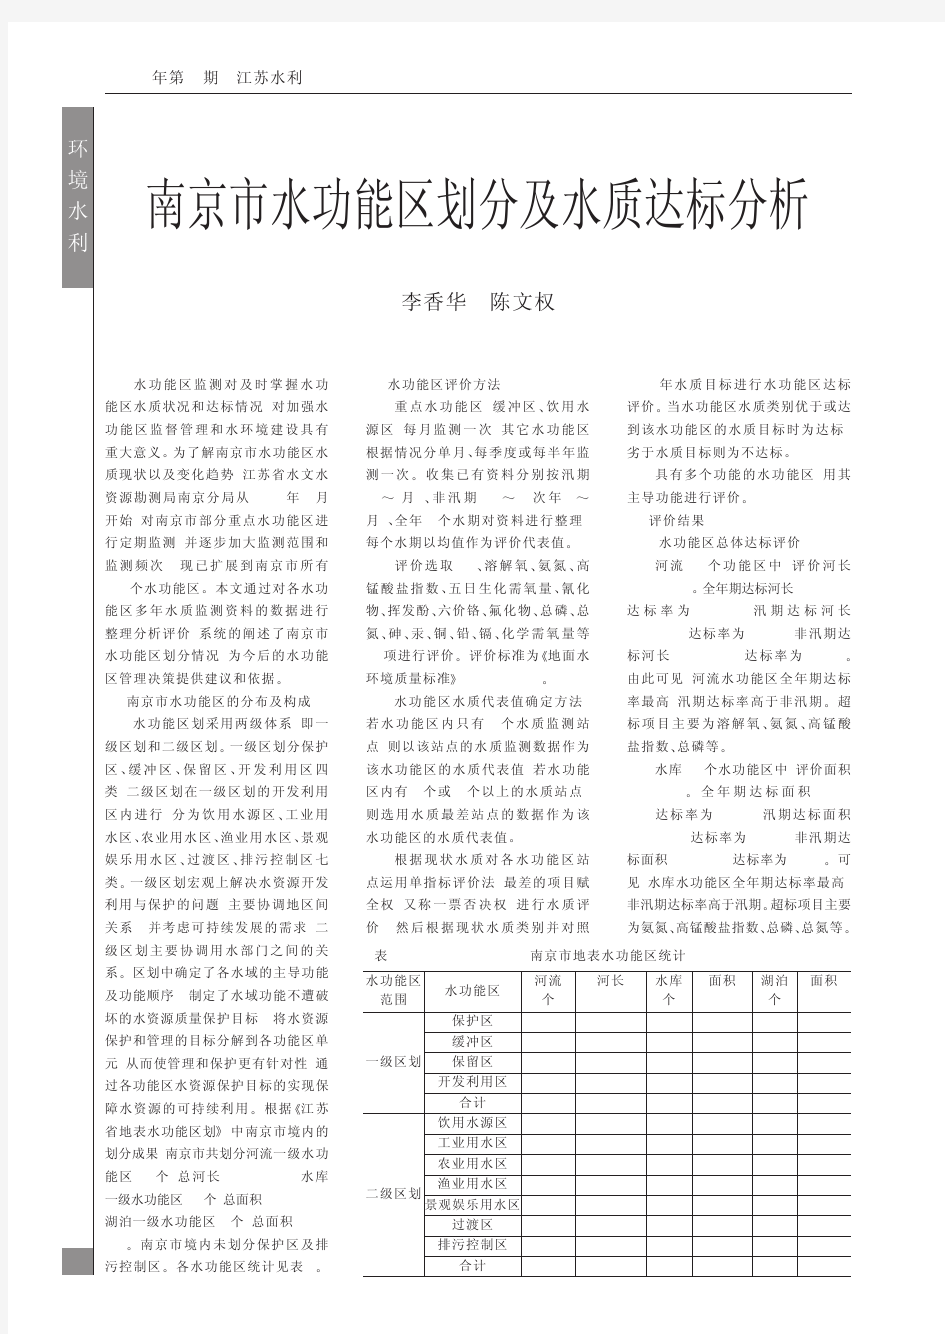 南京市水功能区划分及水质达标分析